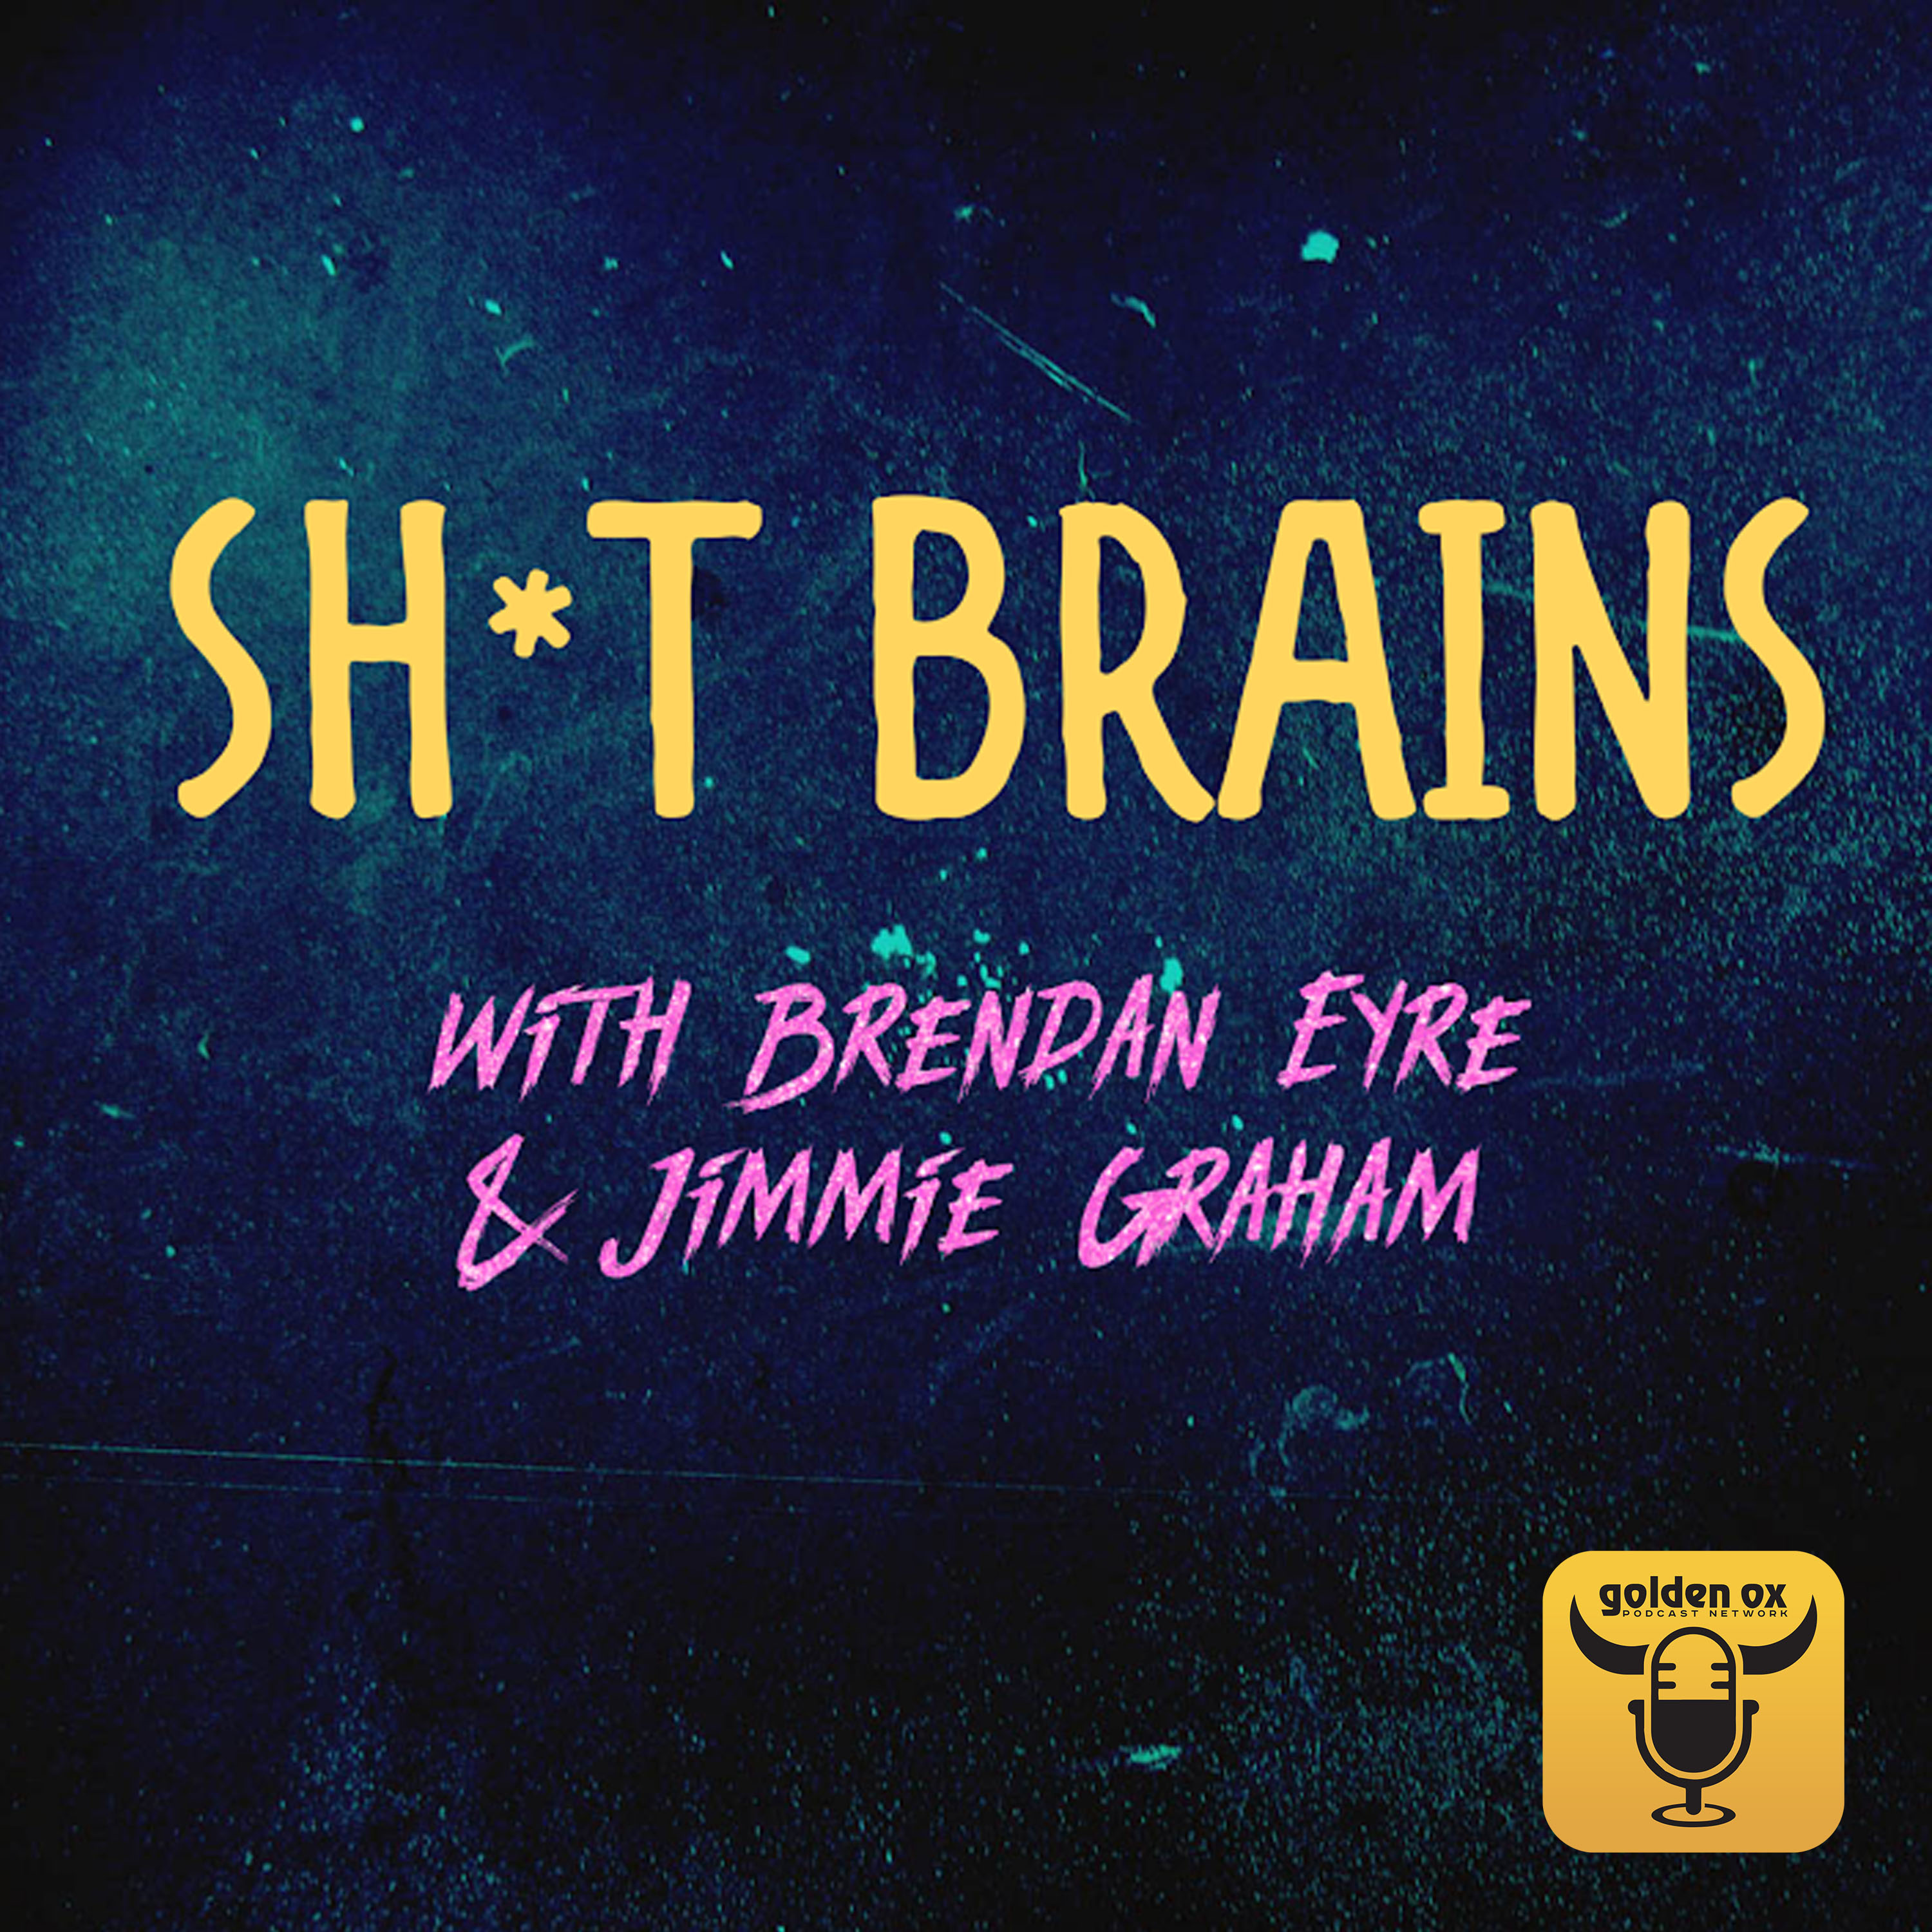 Artwork for podcast Shit Brains